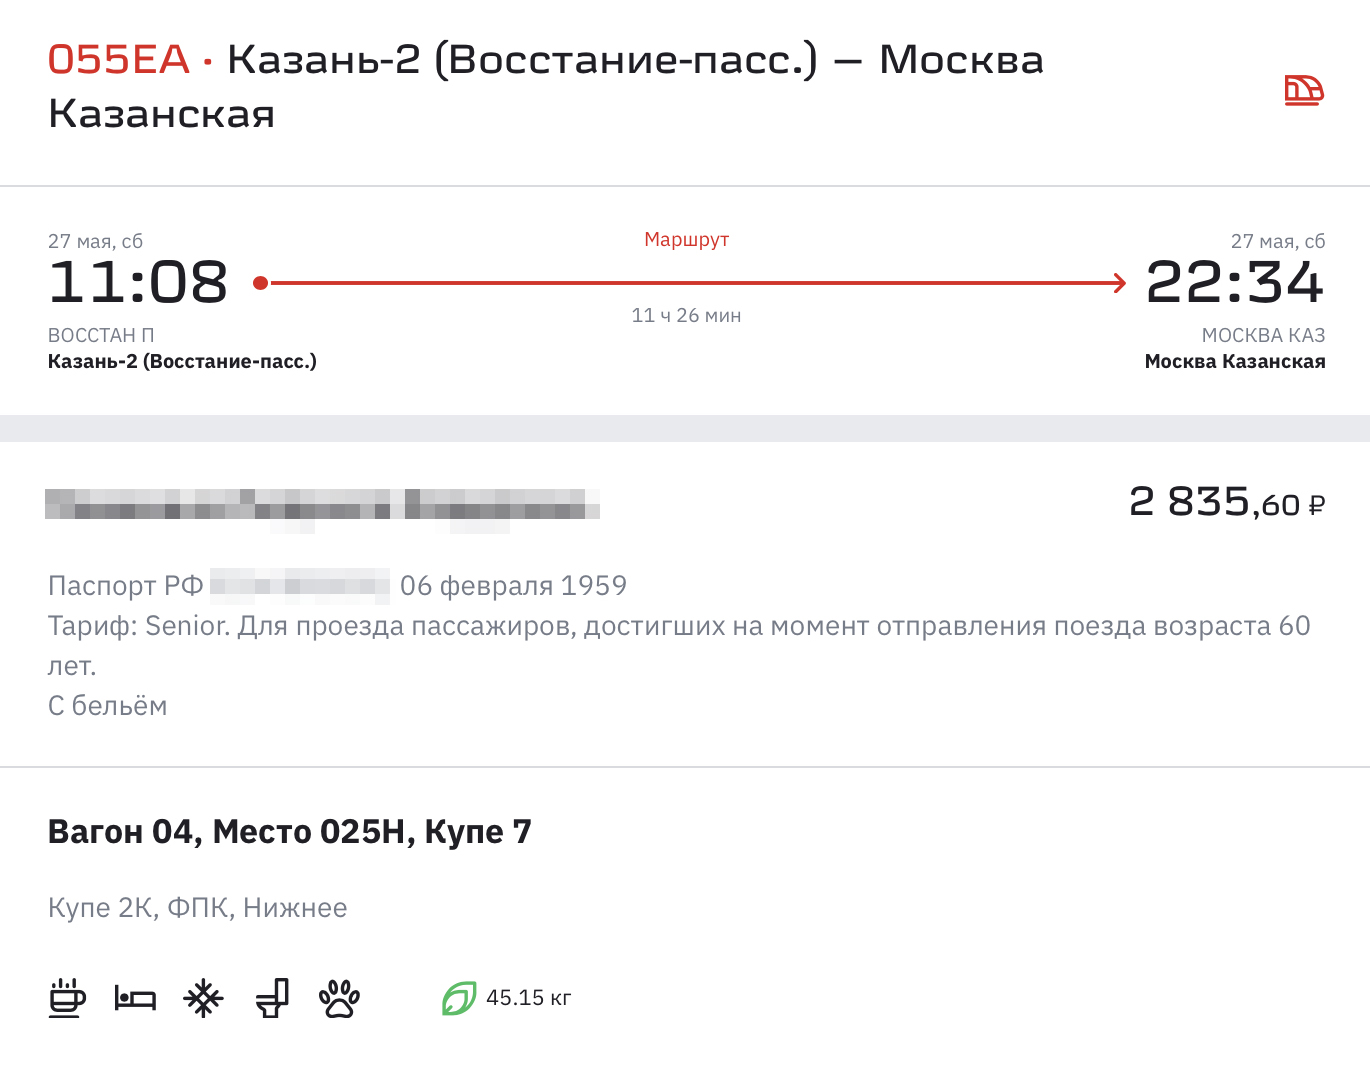 Со скидкой для людей пожилого возраста билет в купе Казань — Москва стоит 2835 ₽. Без скидки — 3302 ₽